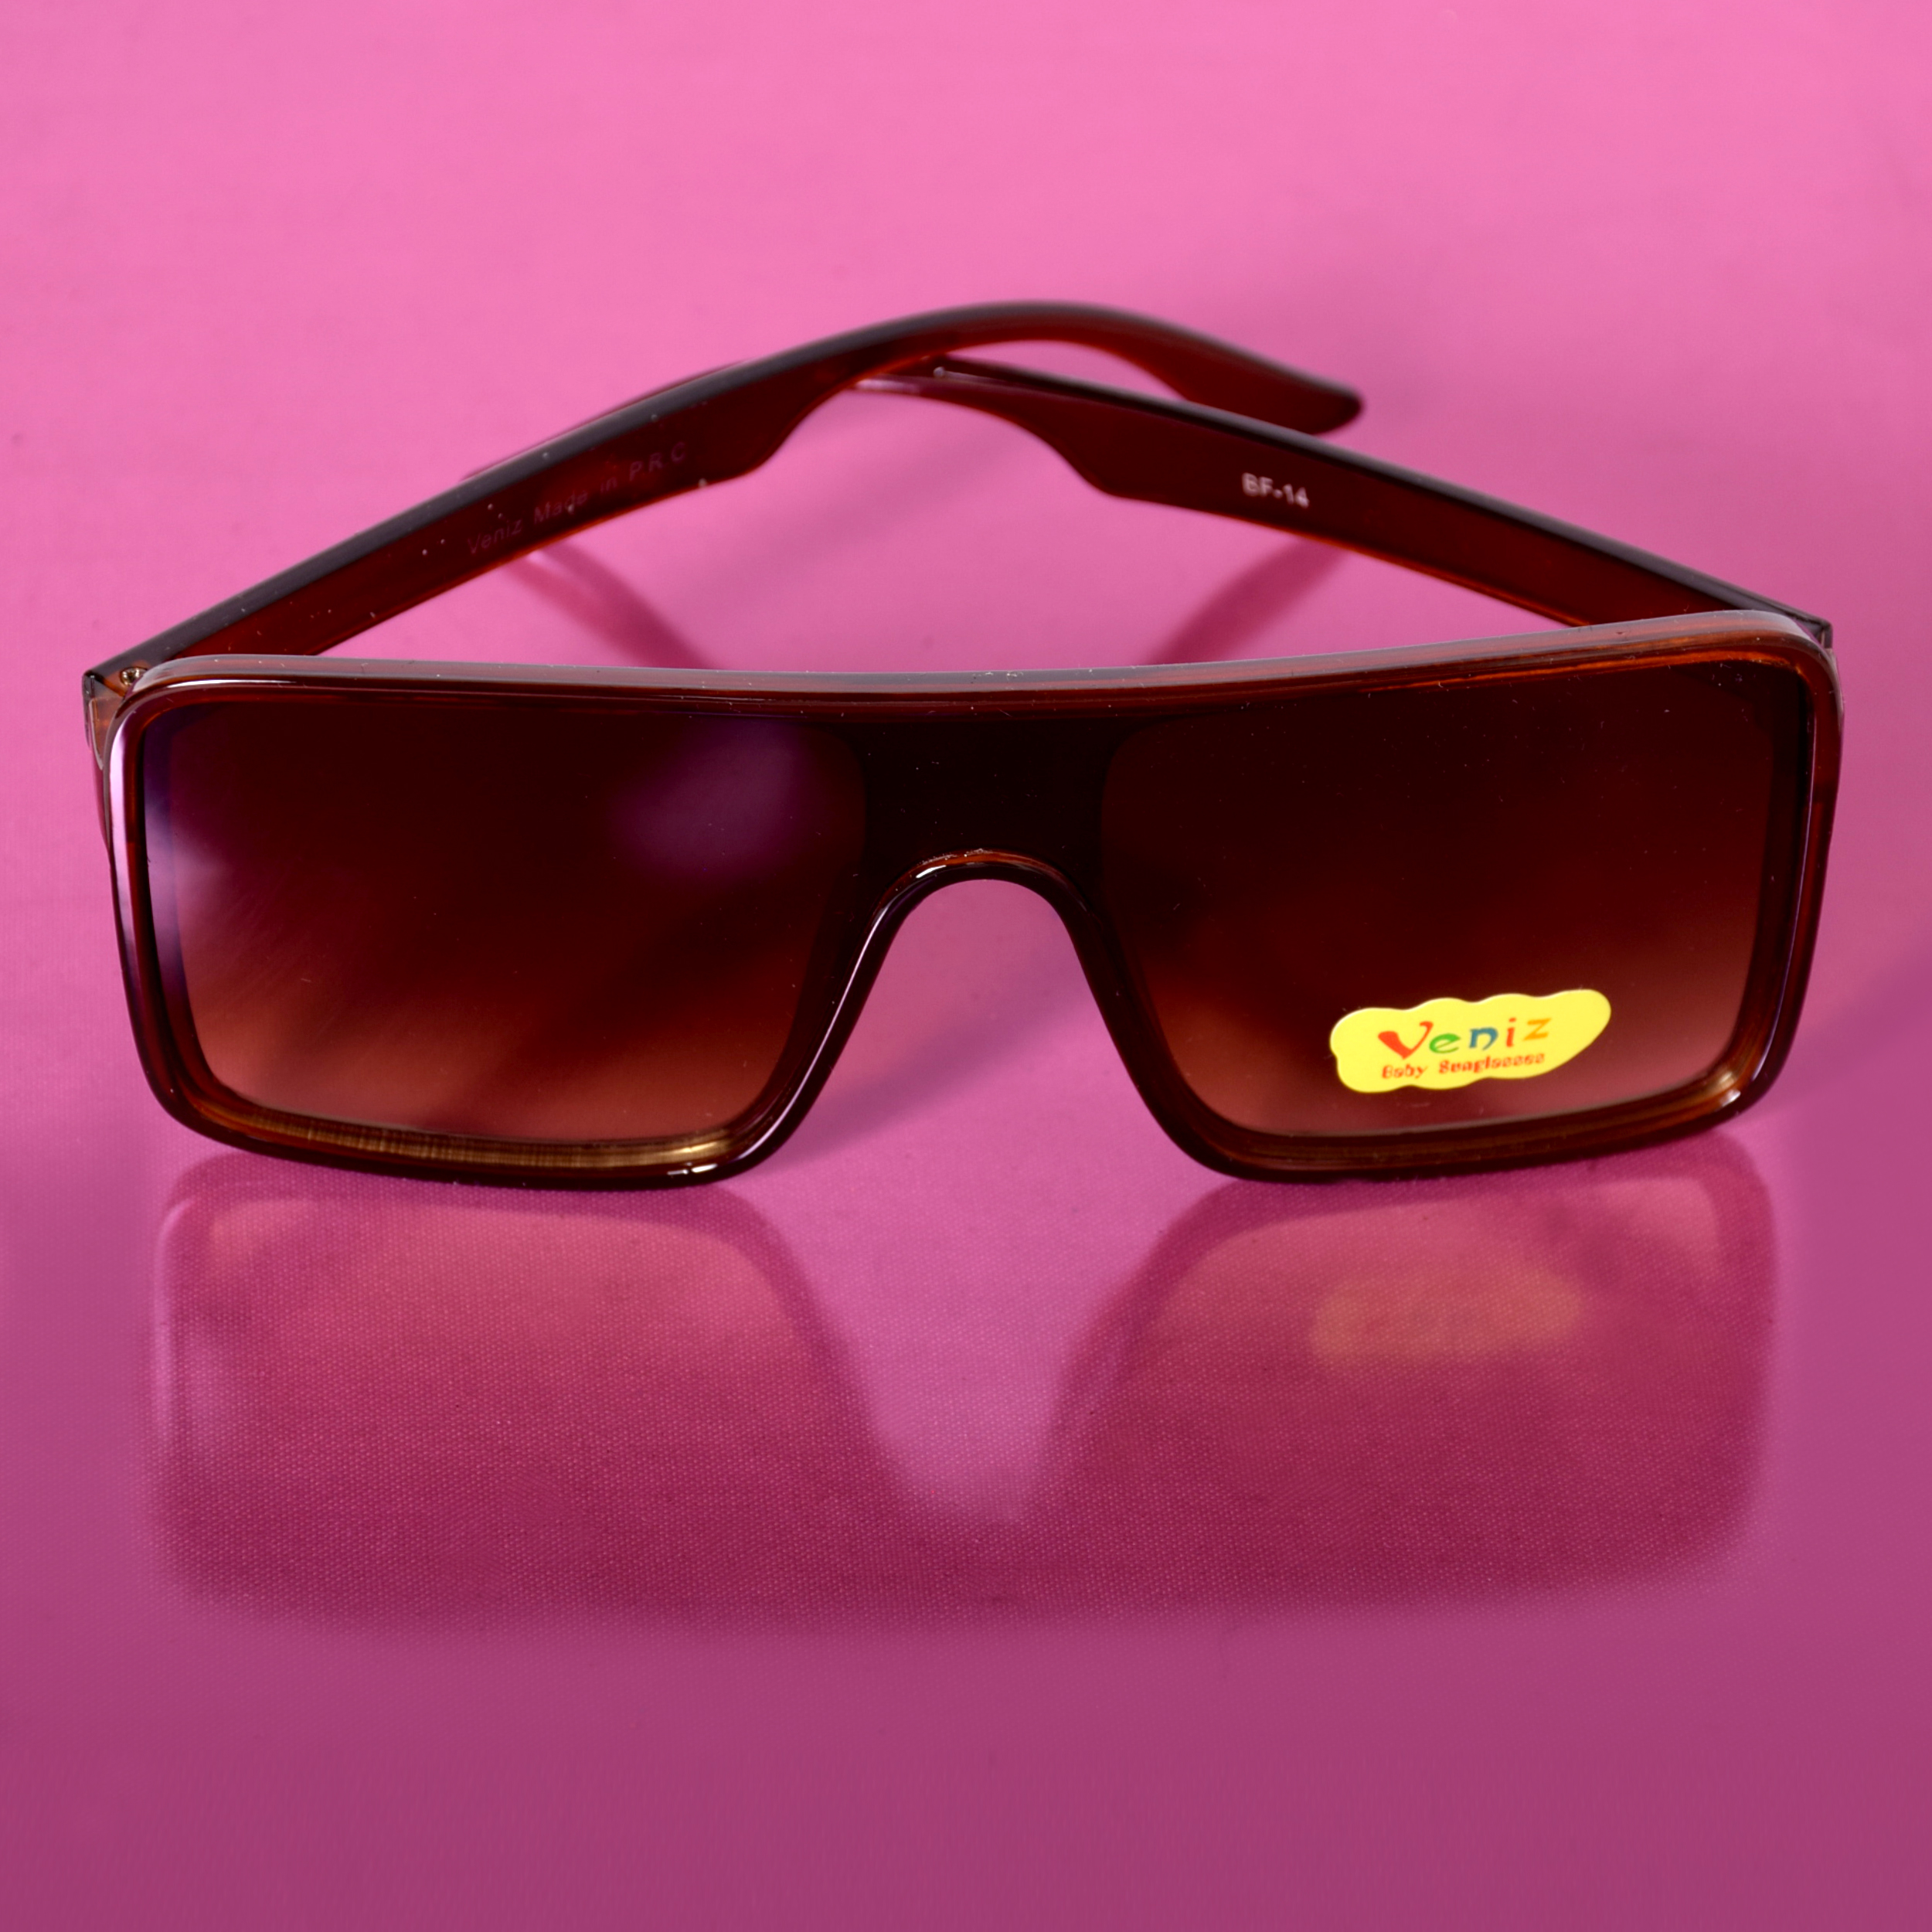  عینک آفتابی ونیز کد BG-BR-007